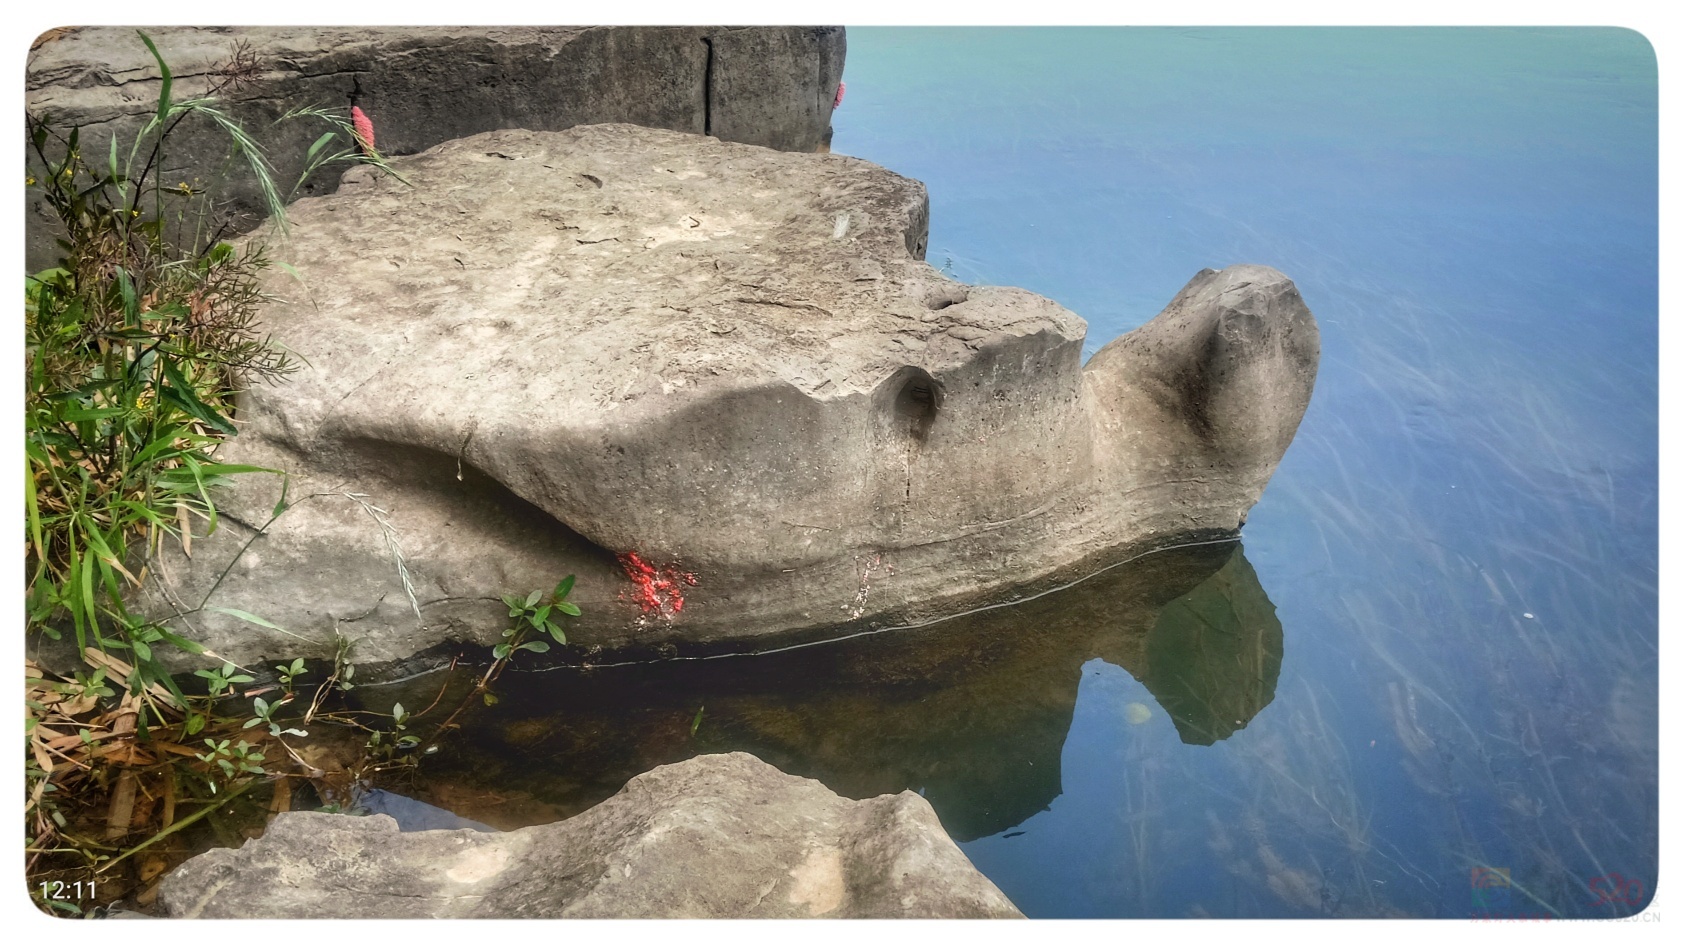 再次发现恭城河边的另一处“石龟”: